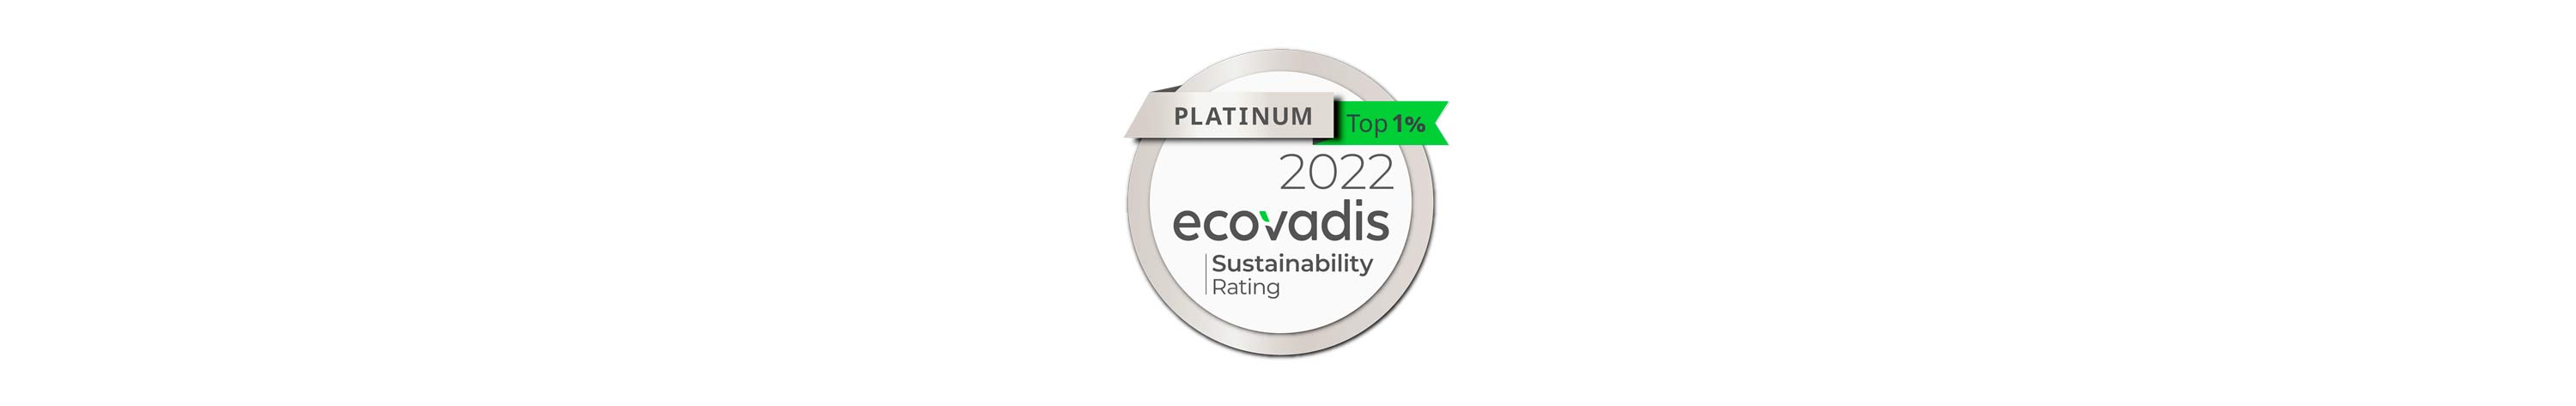 ecovadis-logo-stakeholder-versalis.jpg